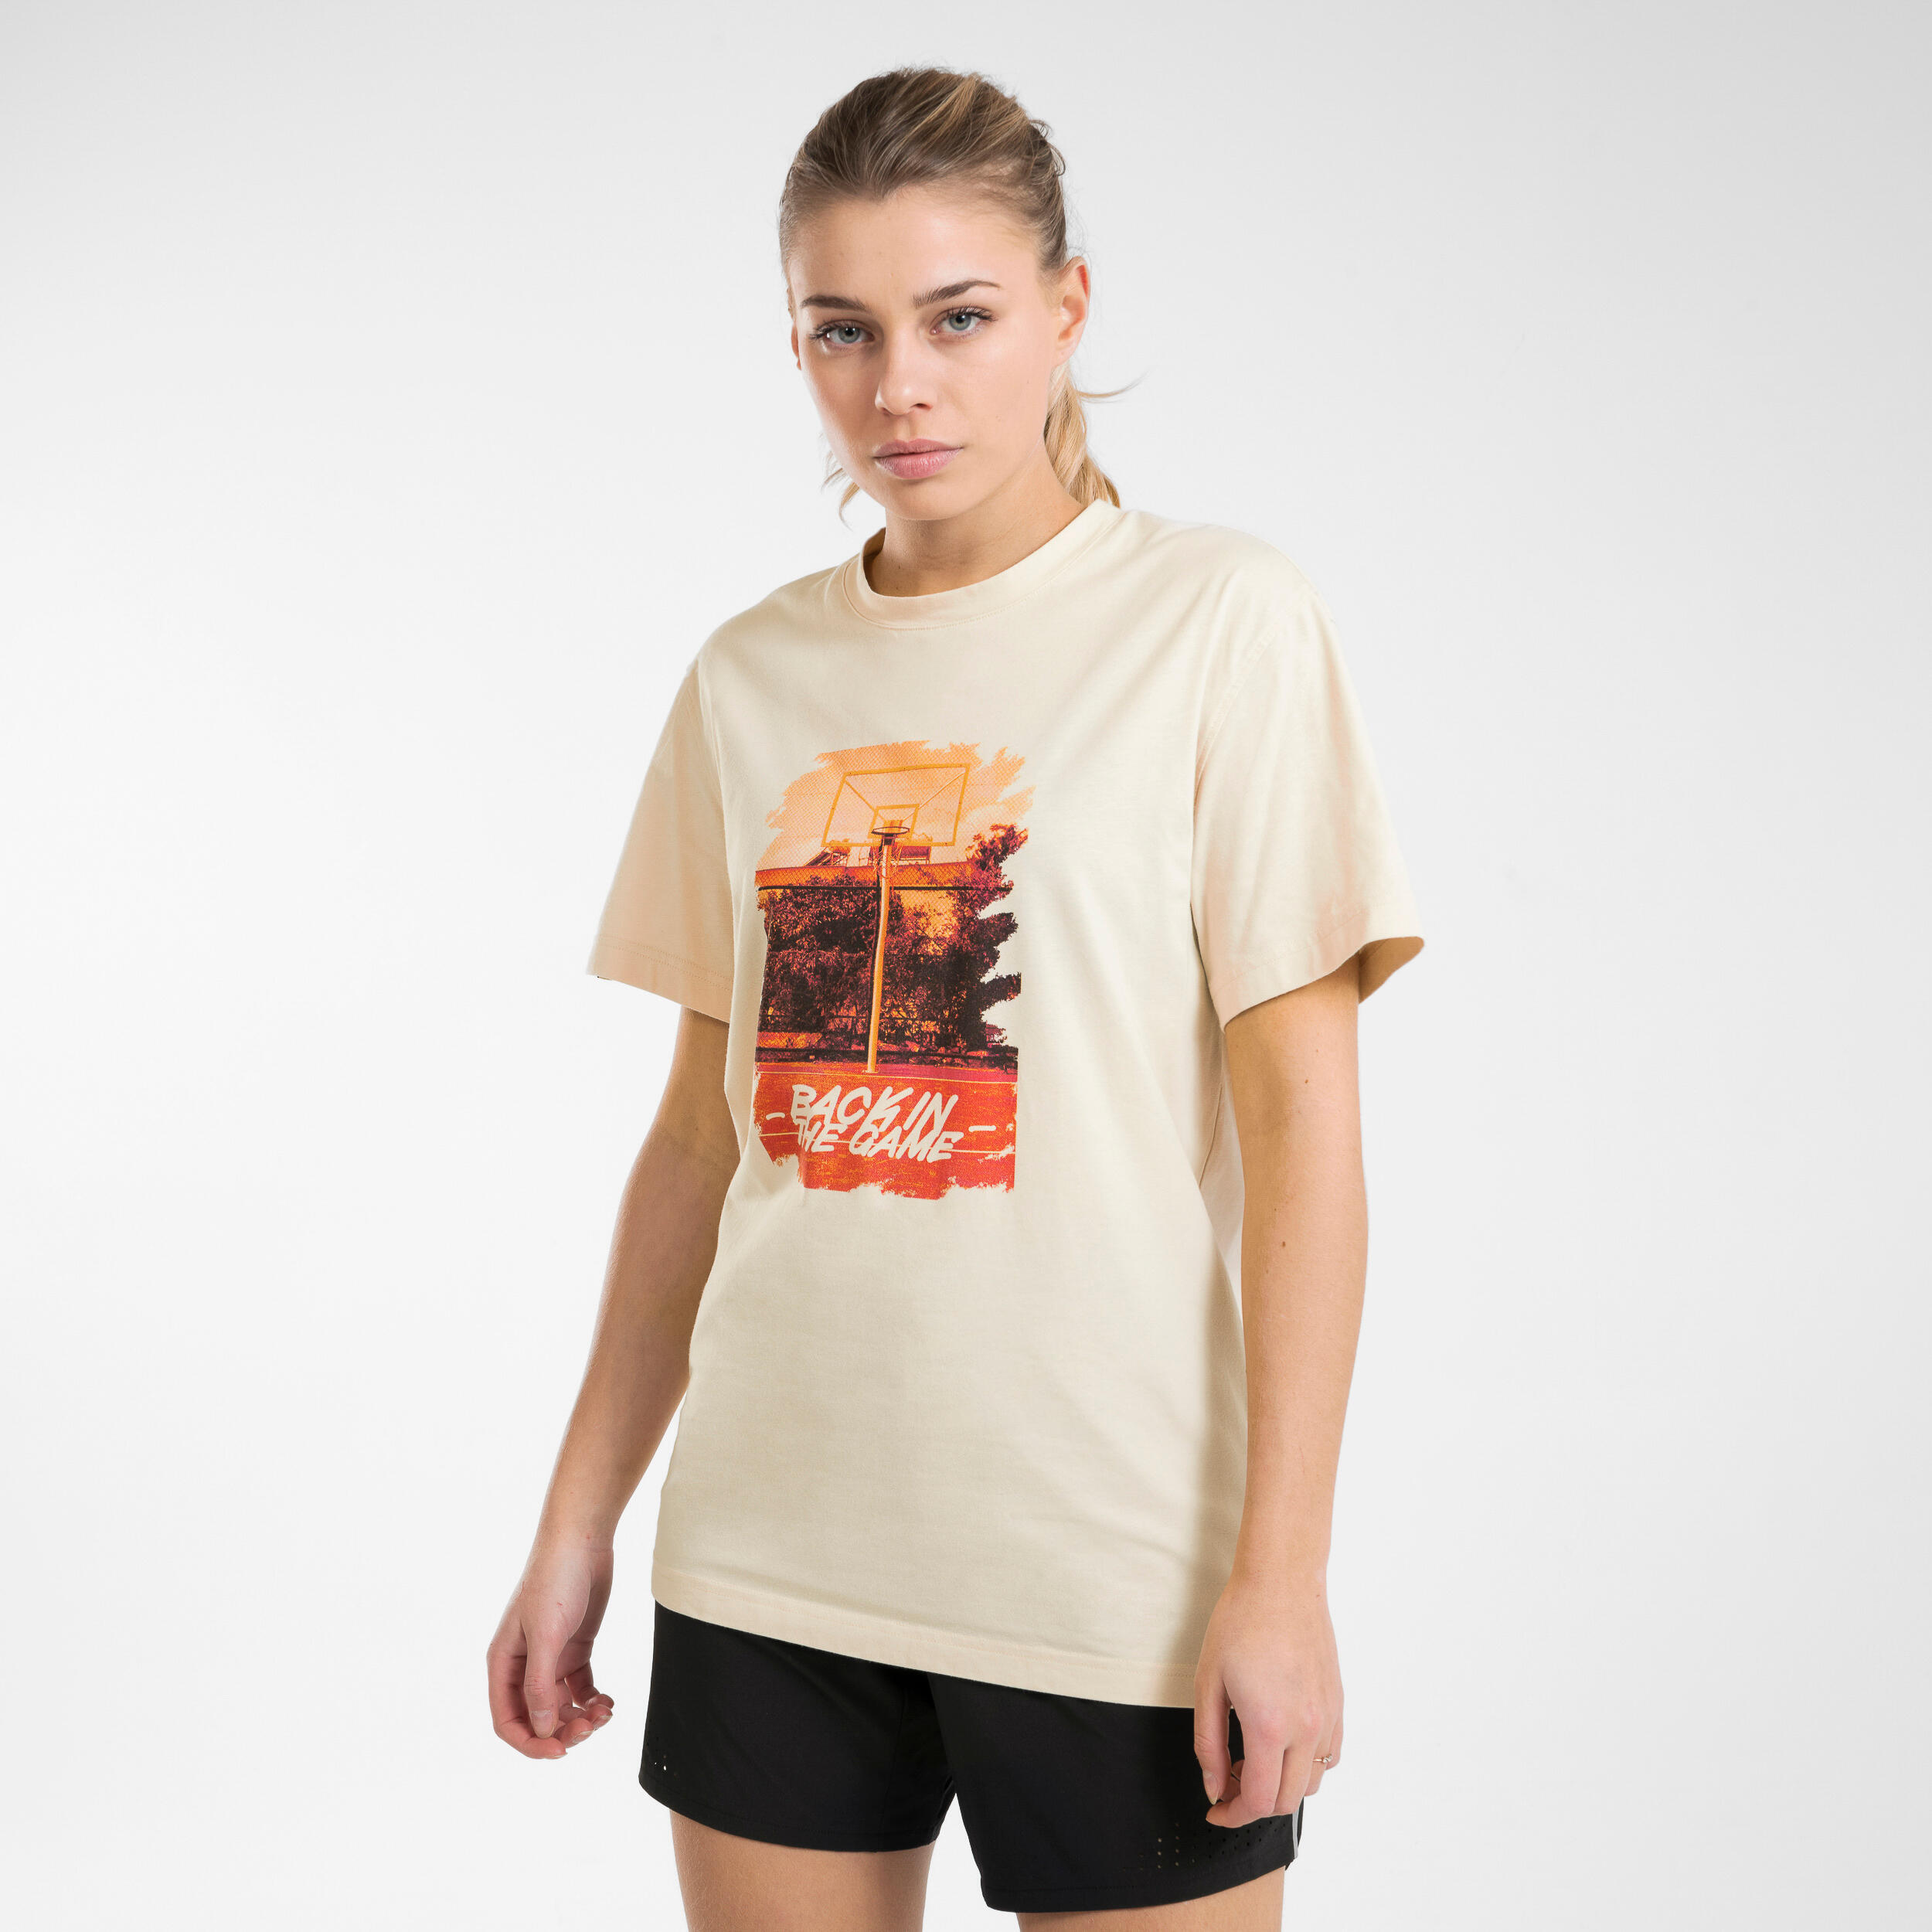 Men's/Women's Basketball T-Shirt/Jersey TS500 Signature - Beige 2/8